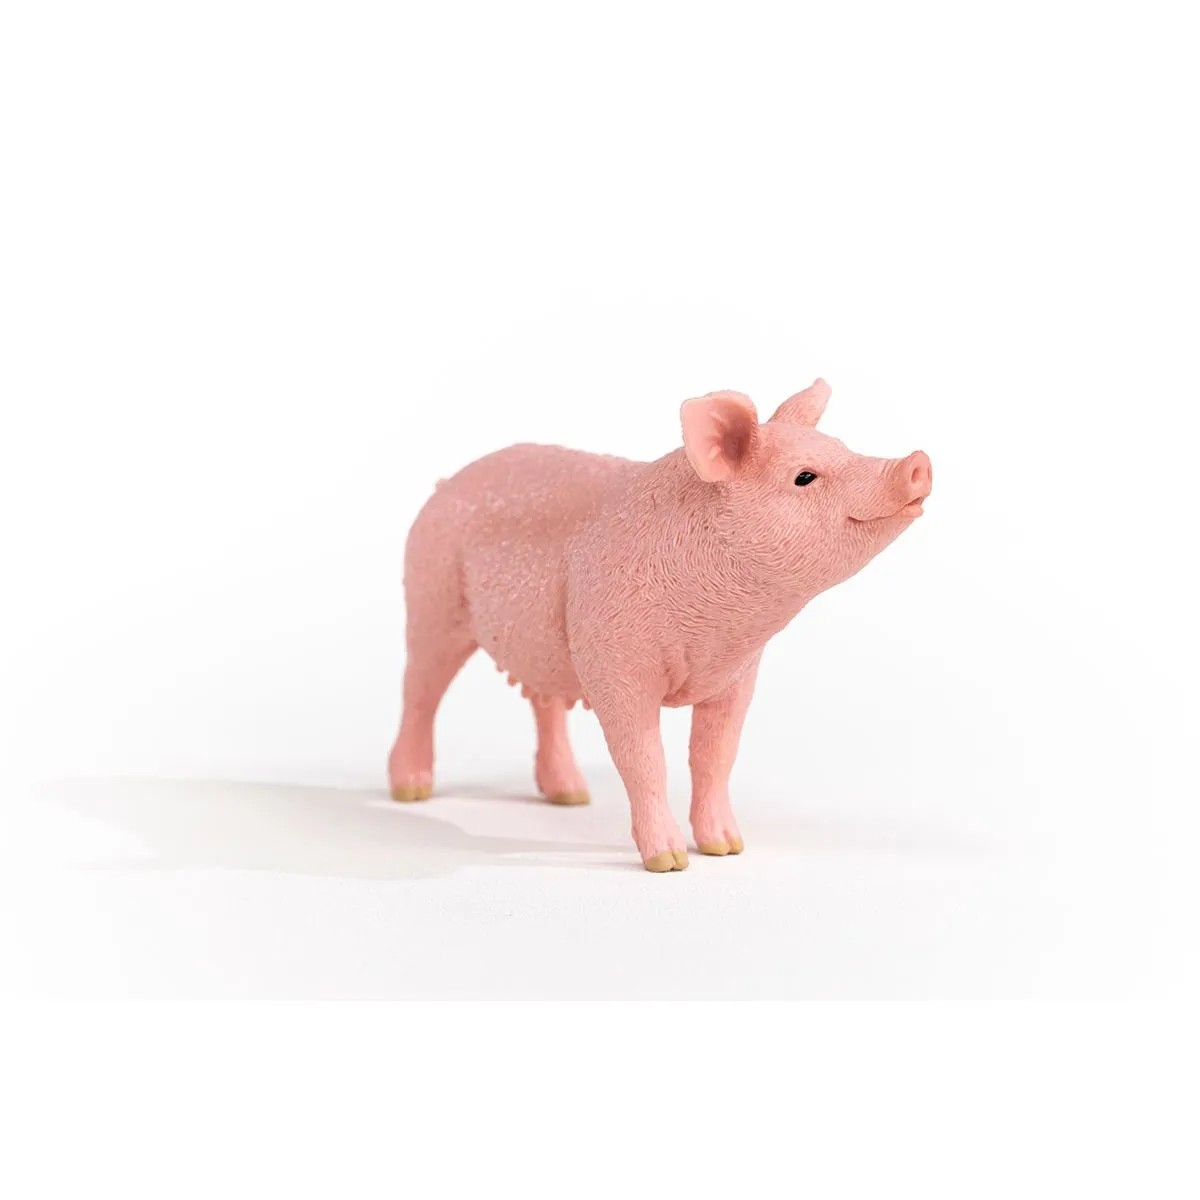 Acheter Cochon - Figurines et accessoires - Schleich - Le Nuage de